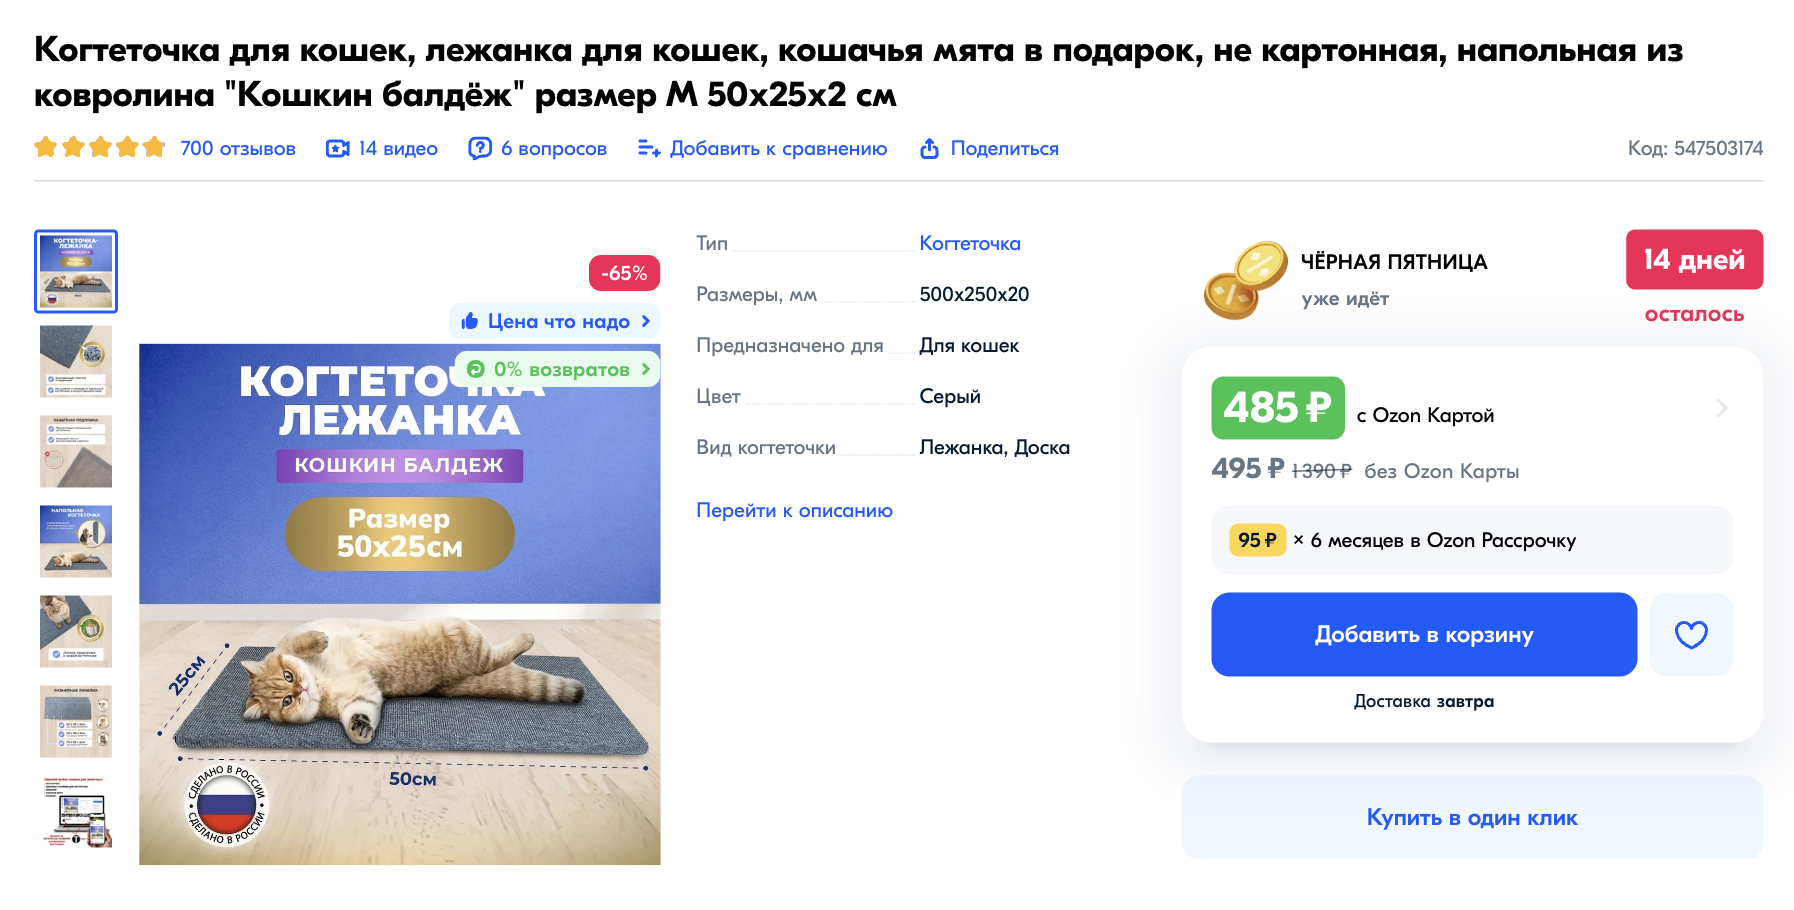 Еще когтеточка-коврик может быть лежанкой для кошки. Источник: ozon.ru